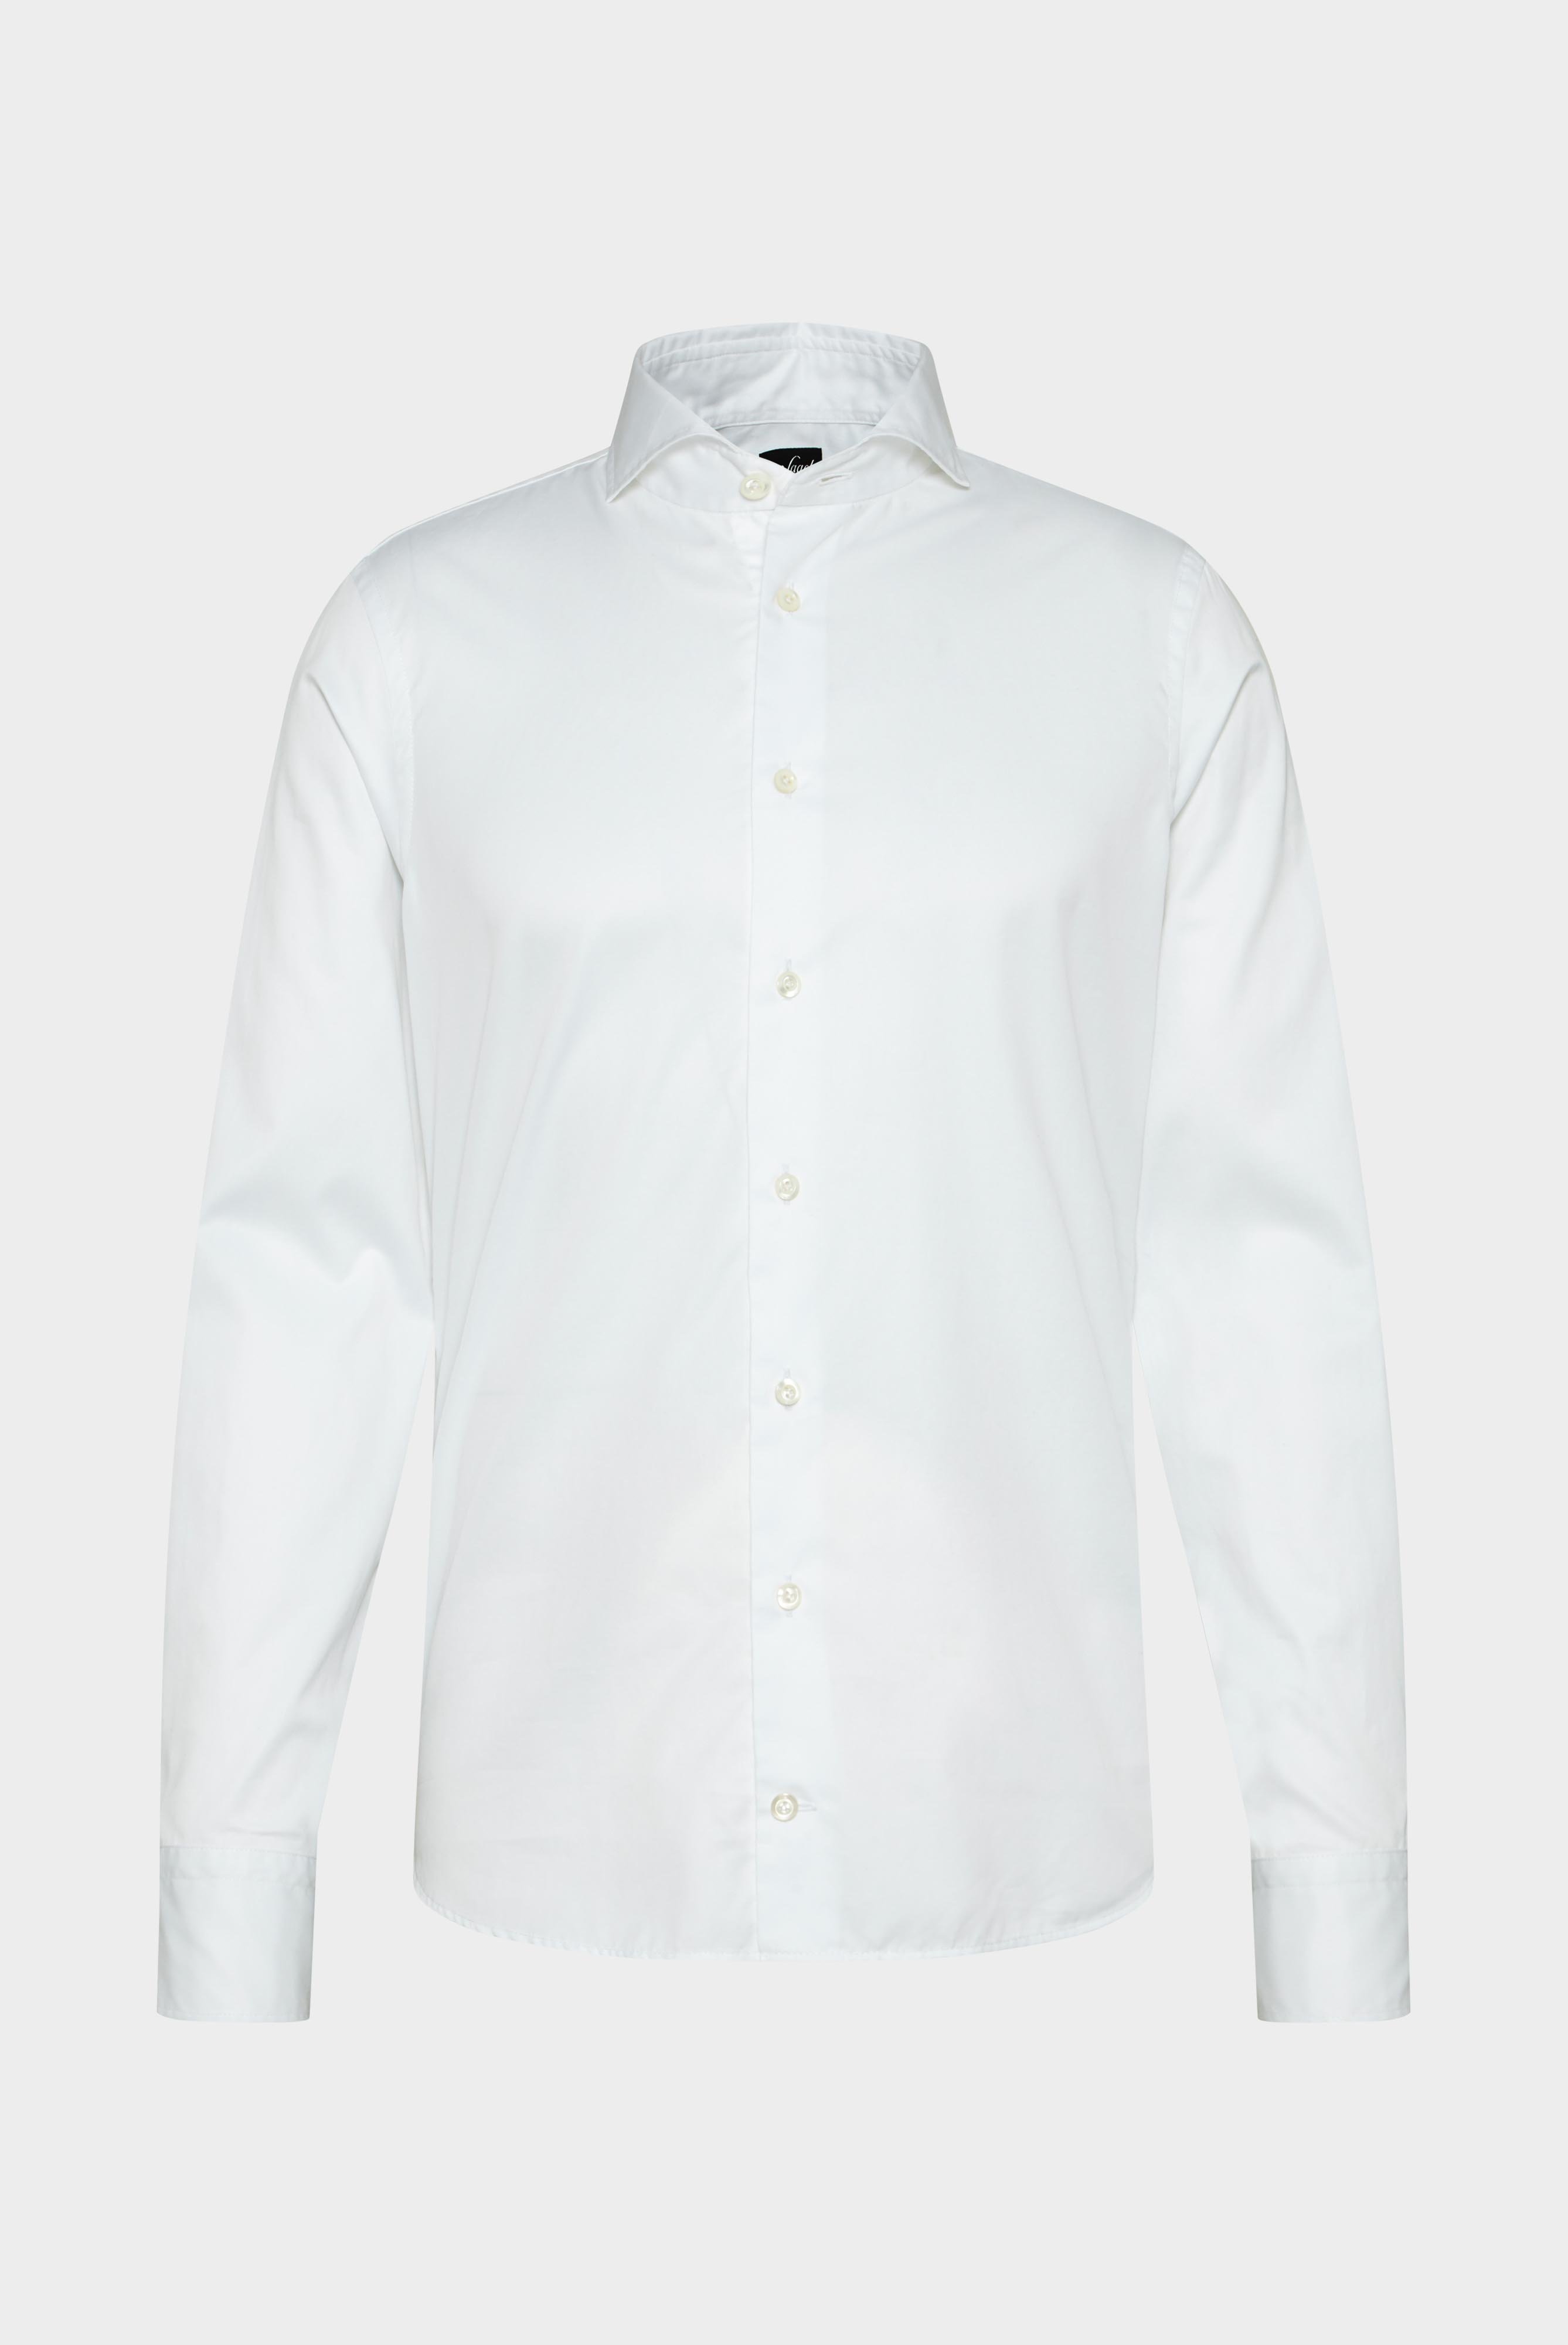 Business Shirts+Soft Washed Fine Twill Shirt+20.2015.EB.160708.000.37